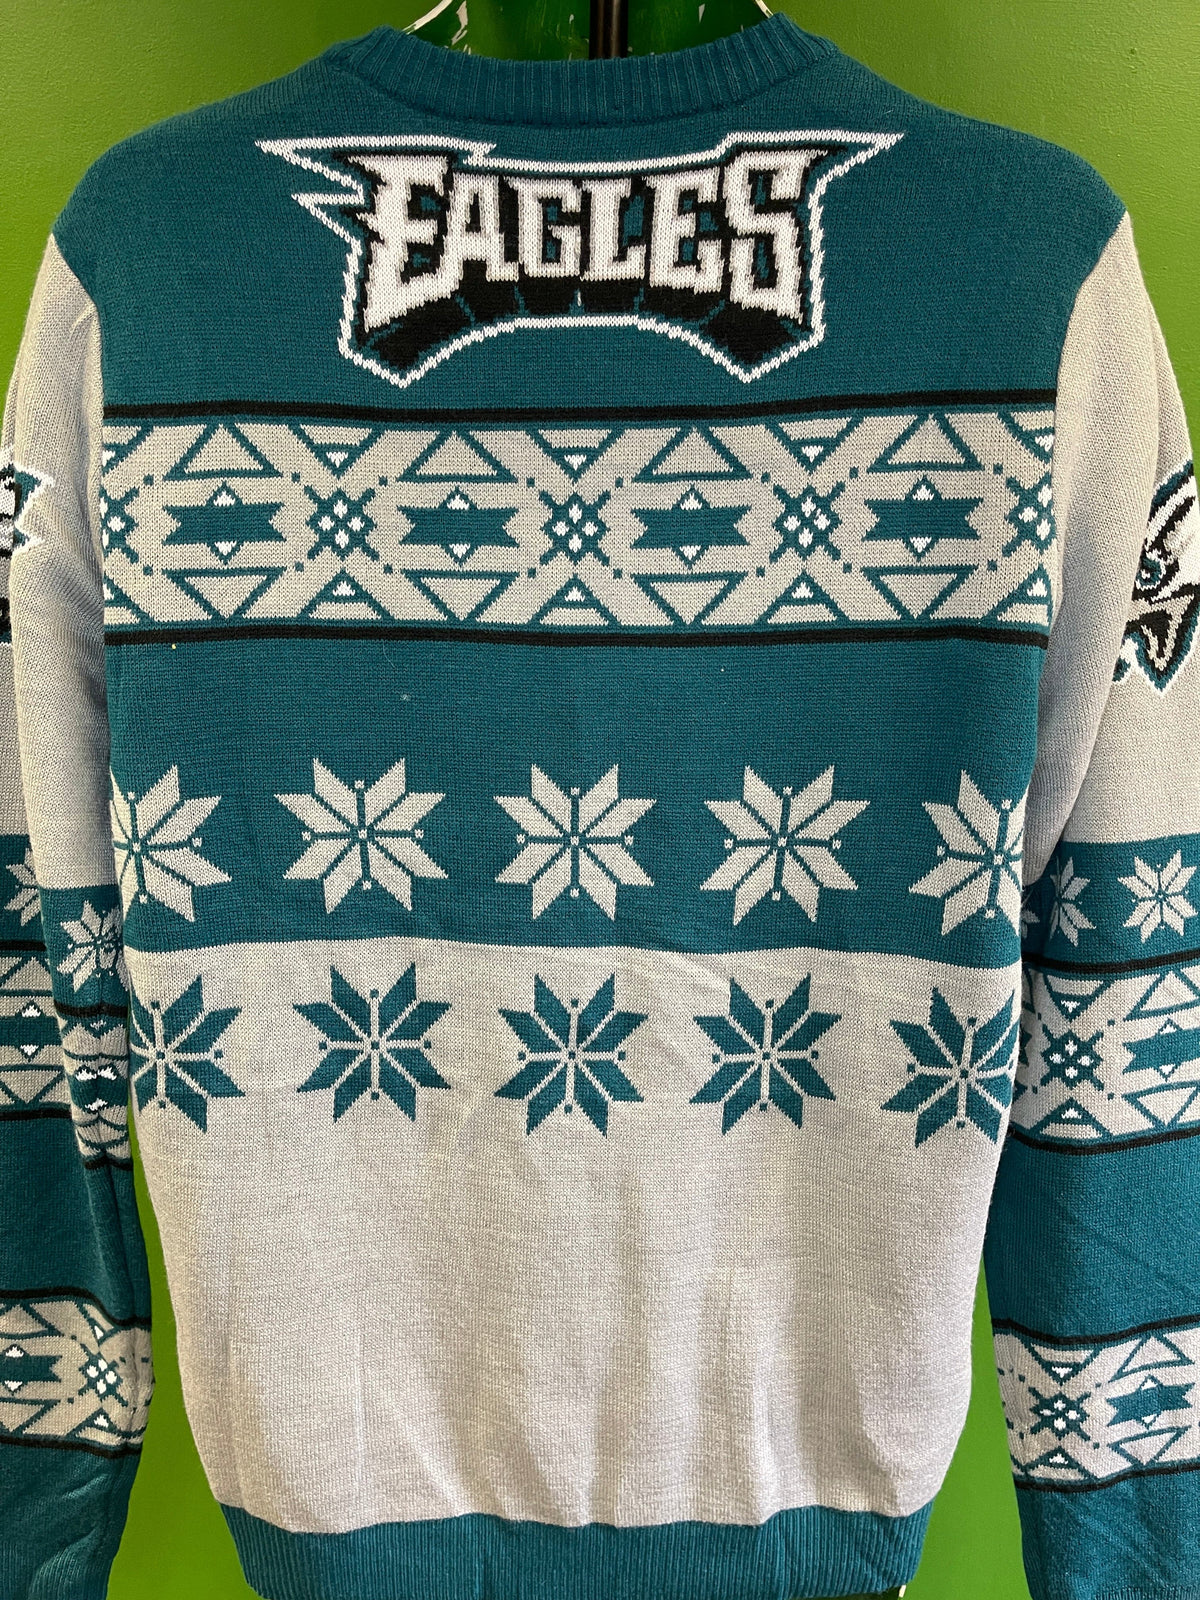 NFL Philadelphia Eagles "Ugly" Christmas/Winter Jumper Men's Medium